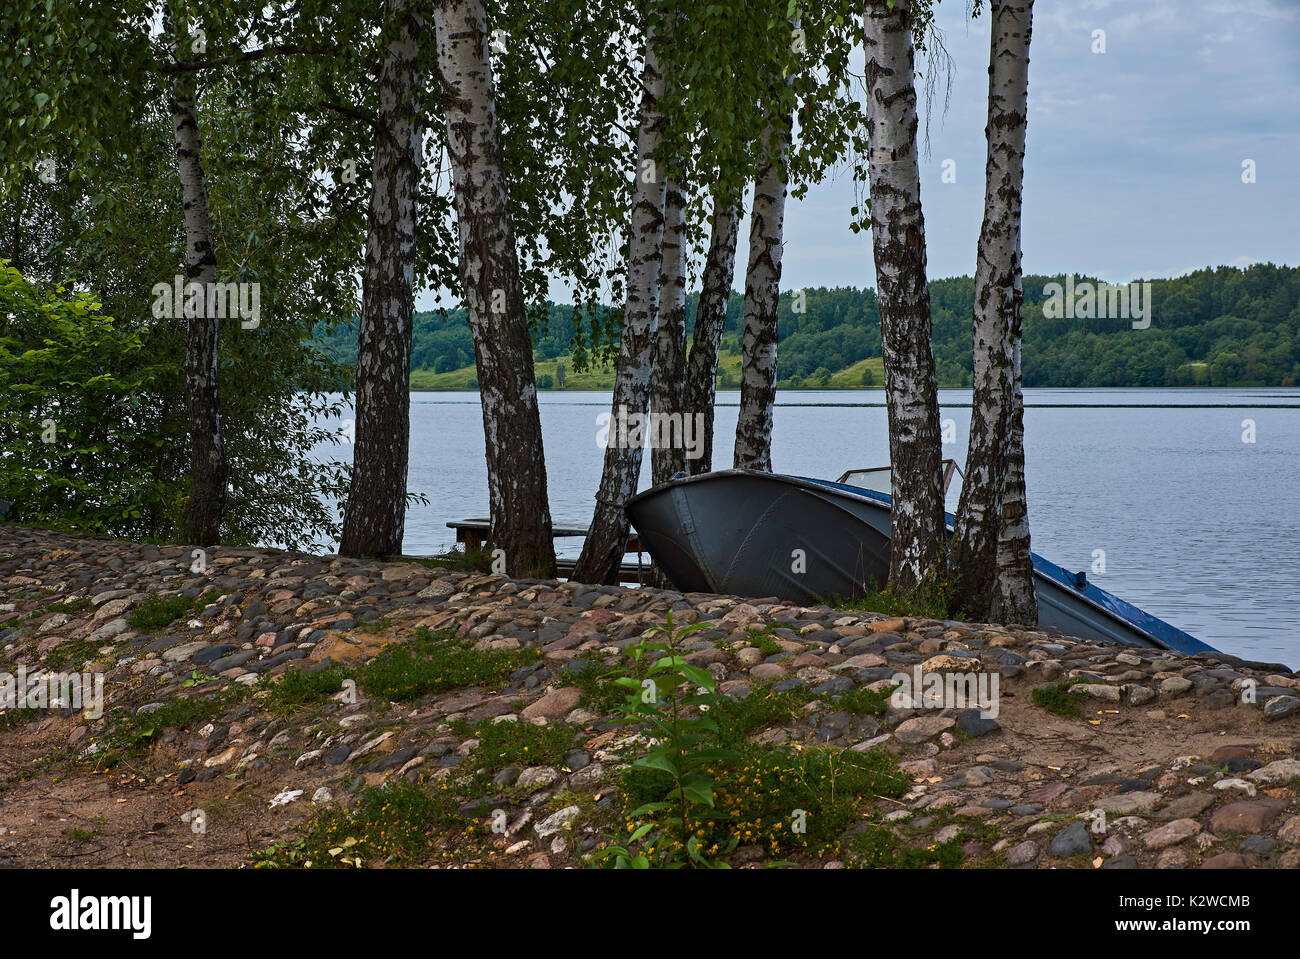 Un bote con motor se encuentra entre los abedules en la ribera del río Volga. El terraplén está pavimentada con adoquines.А bosque es visible Foto de stock